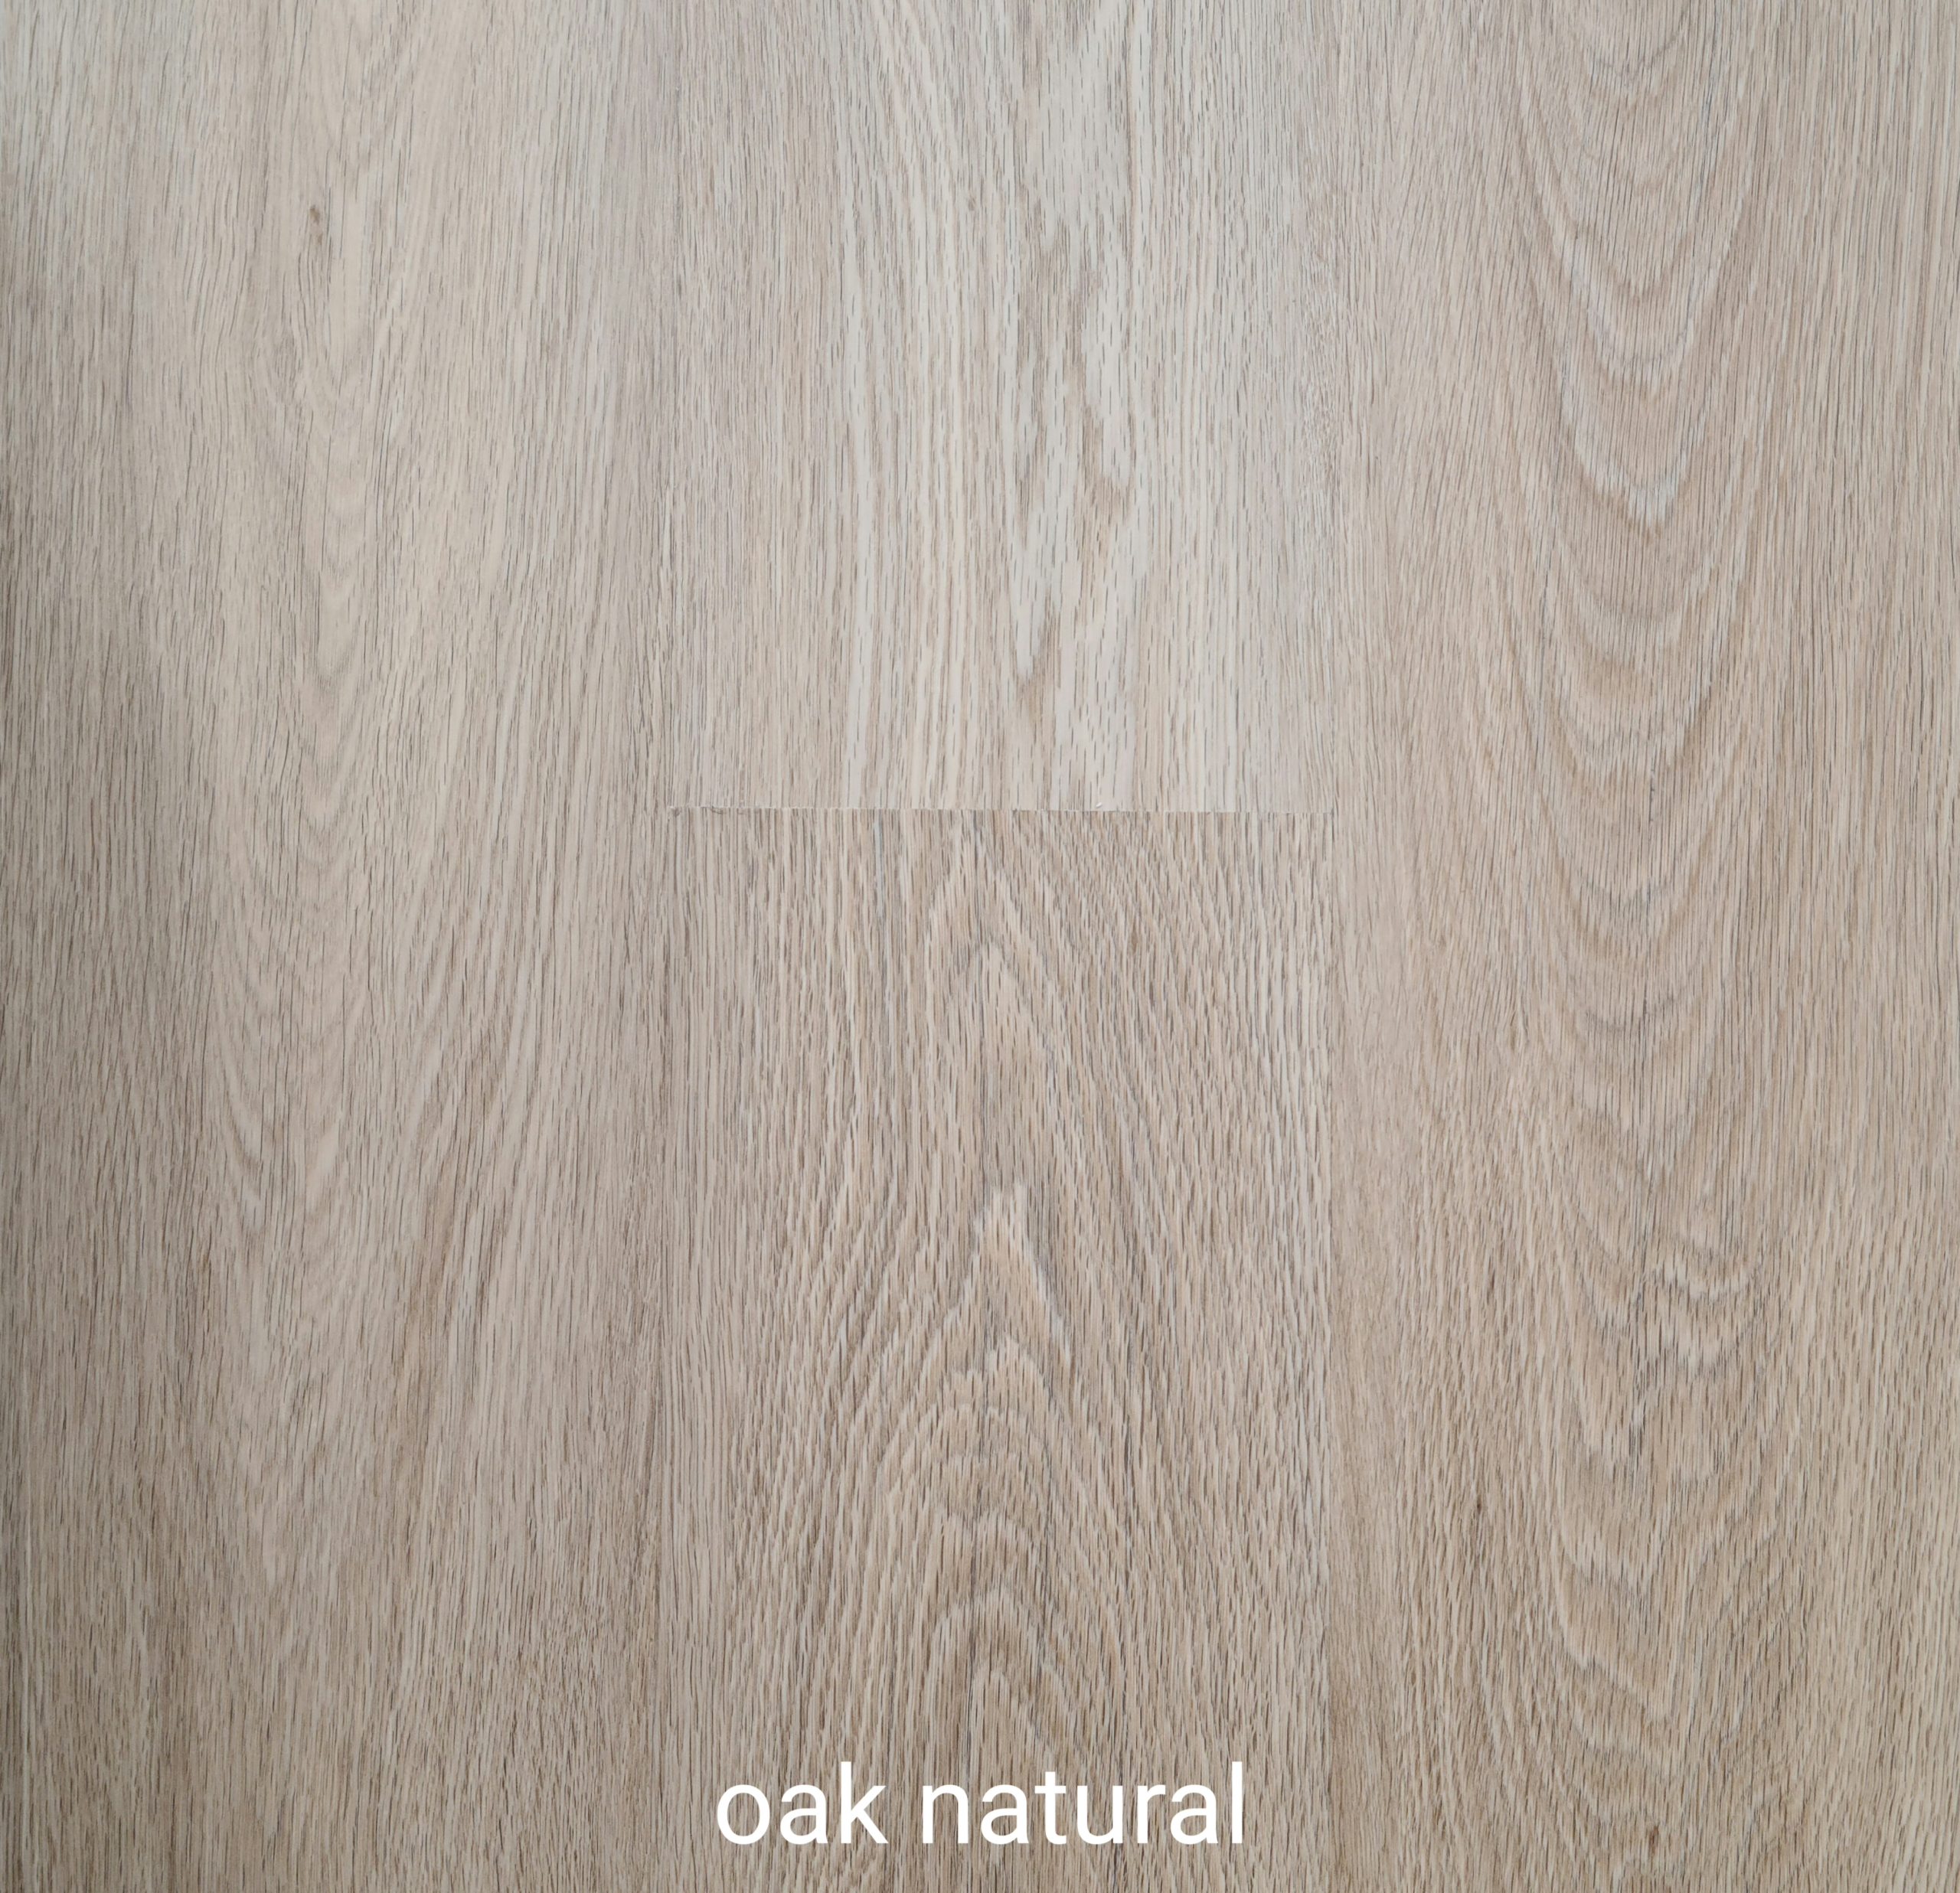 Oak Natural